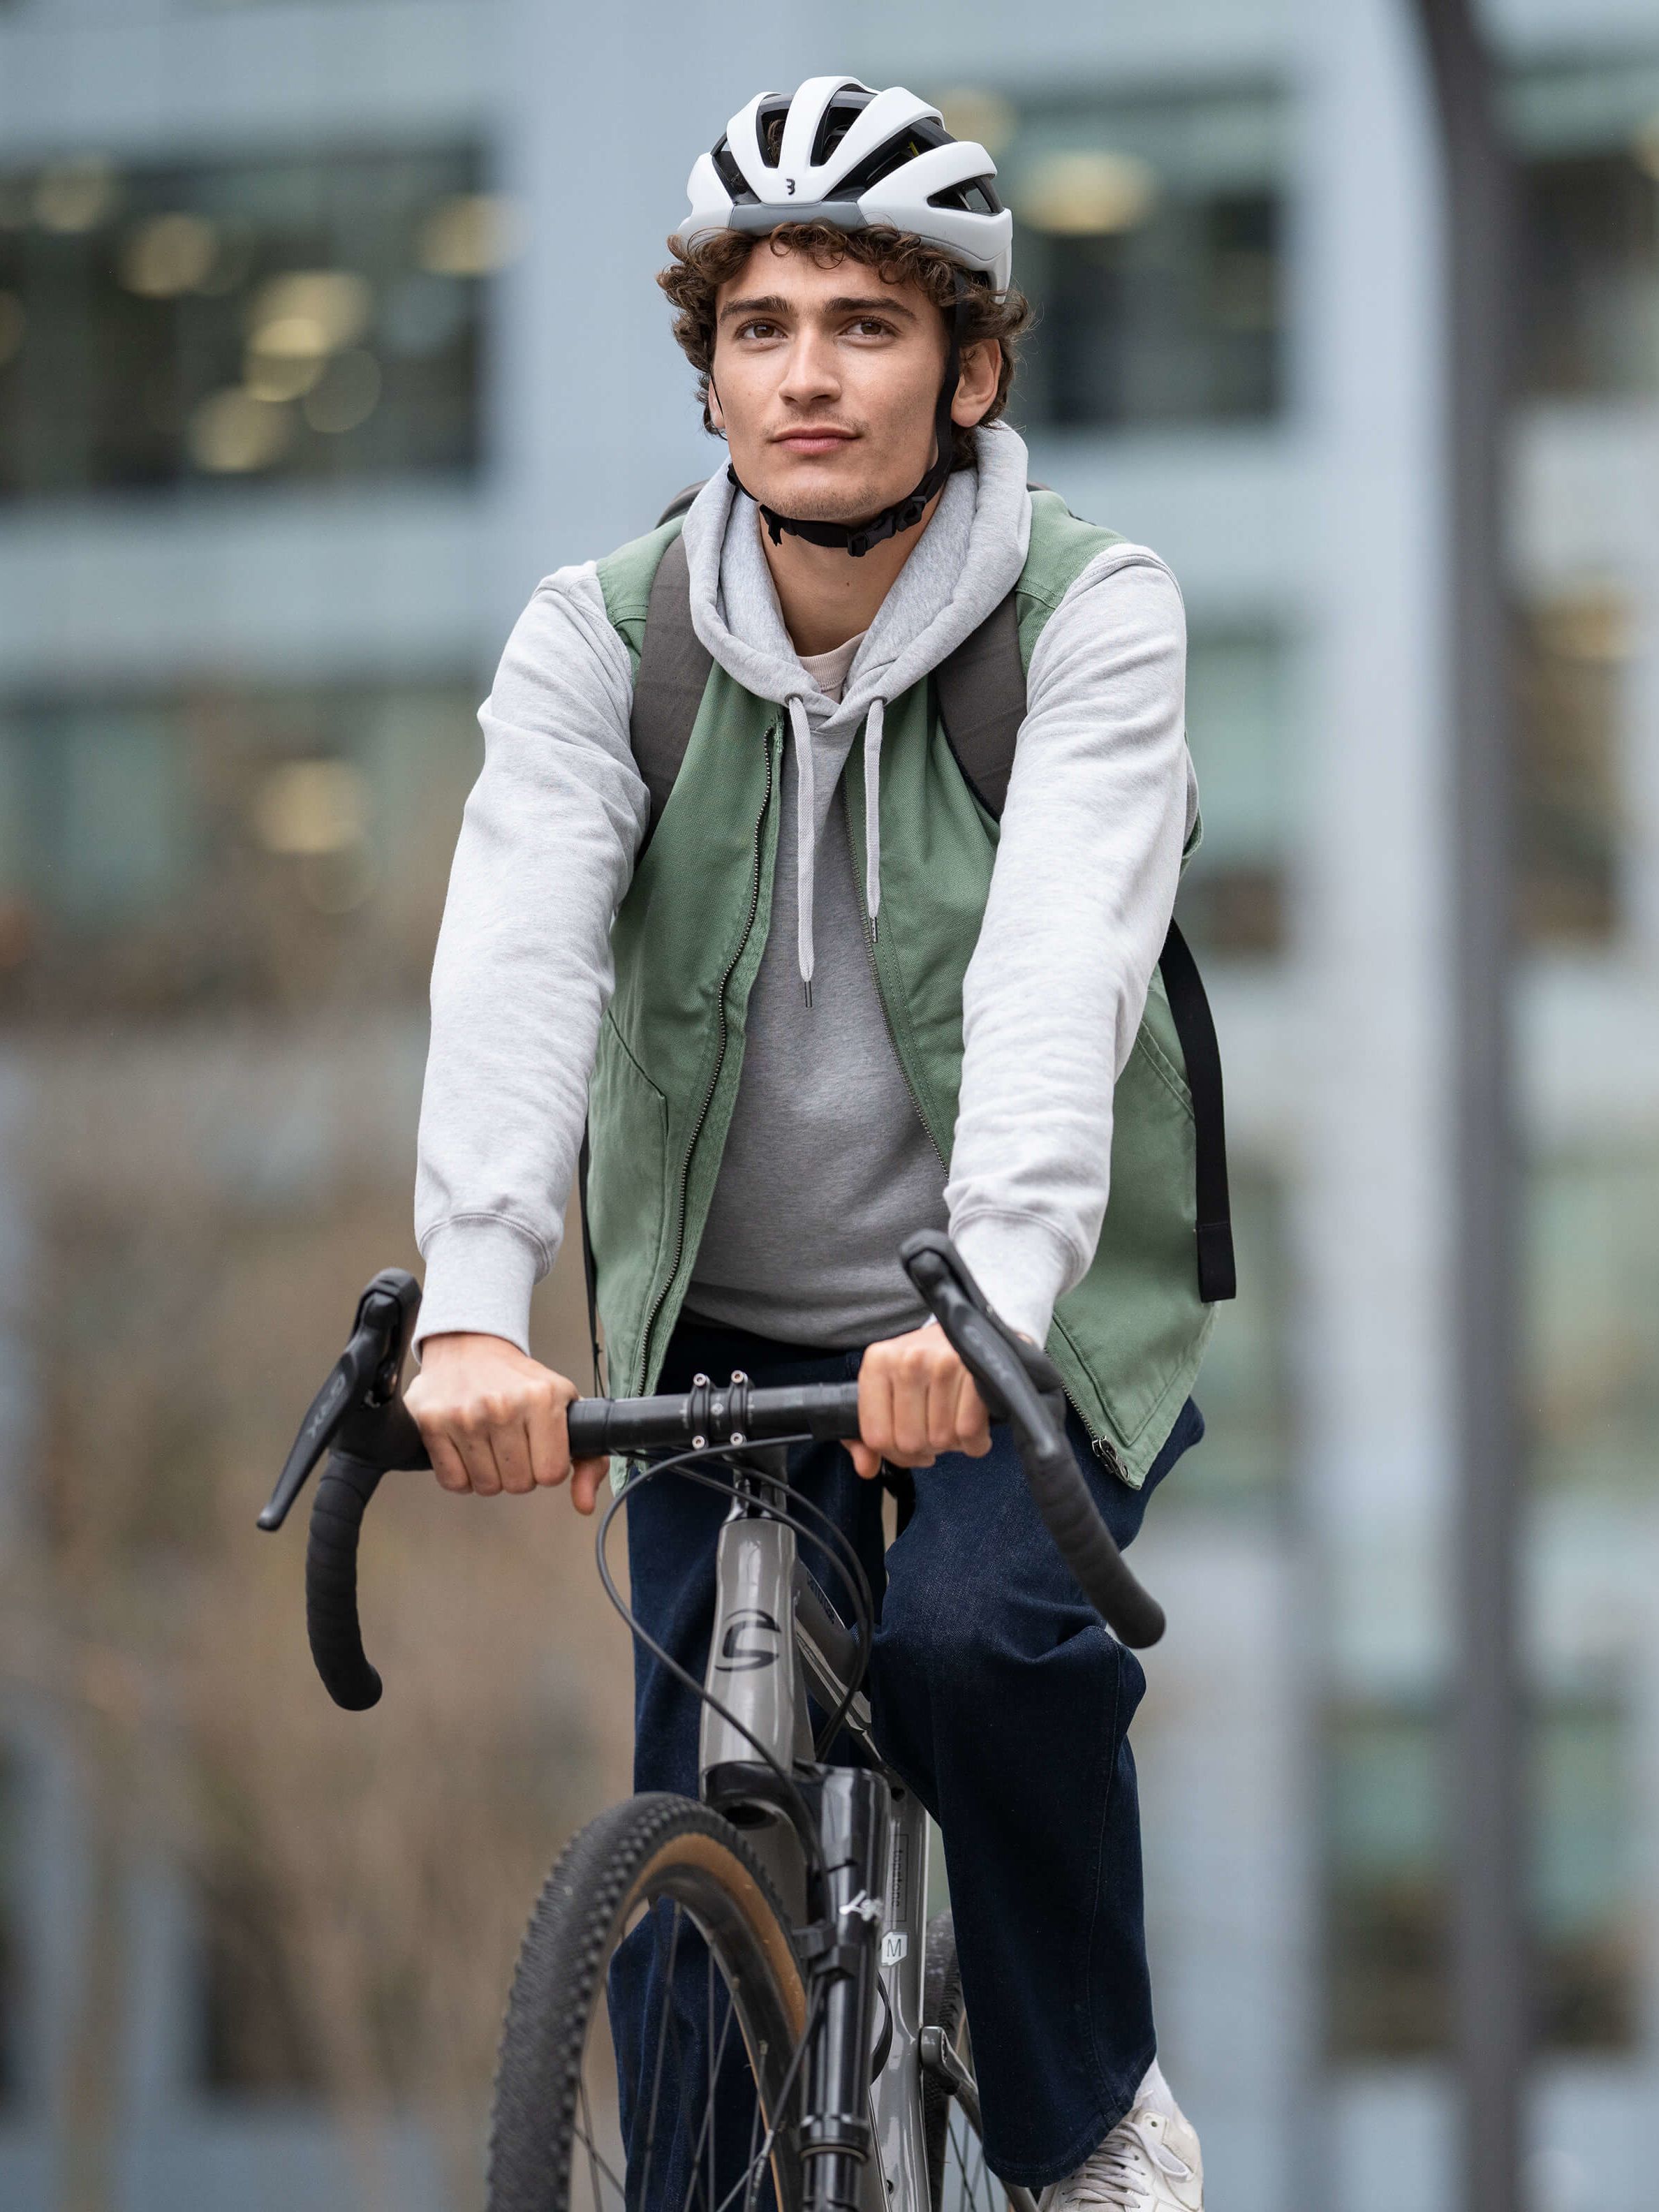 Junge mit Helm auf Fahrrad. Hintergrund ist leicht unscharf.